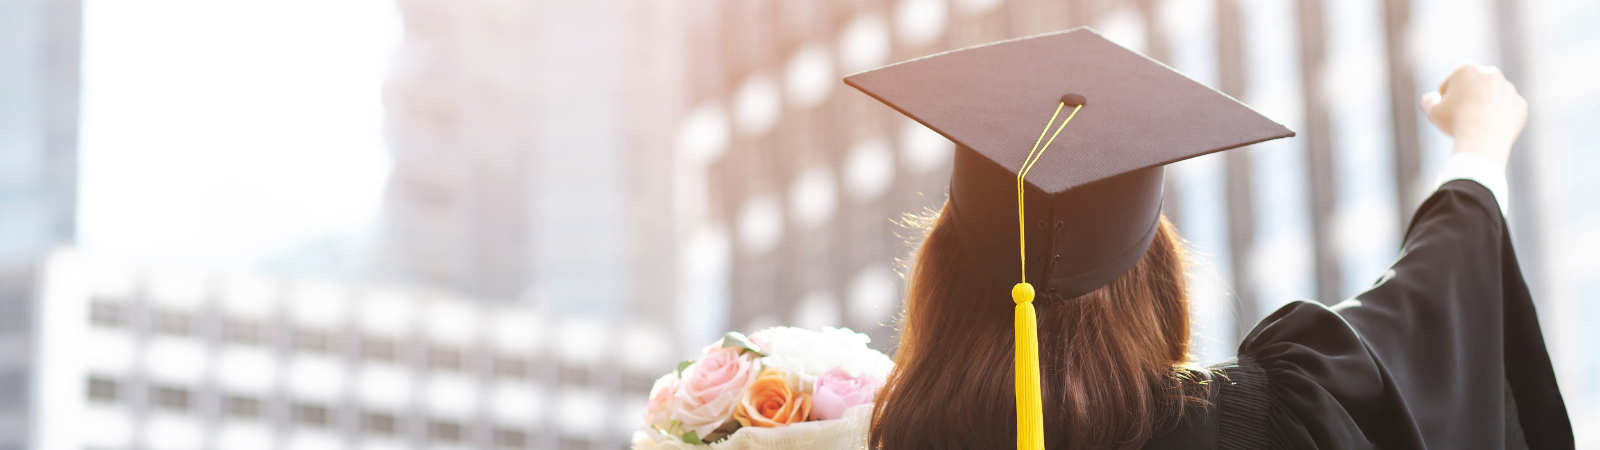 Teen girl in graduation cap